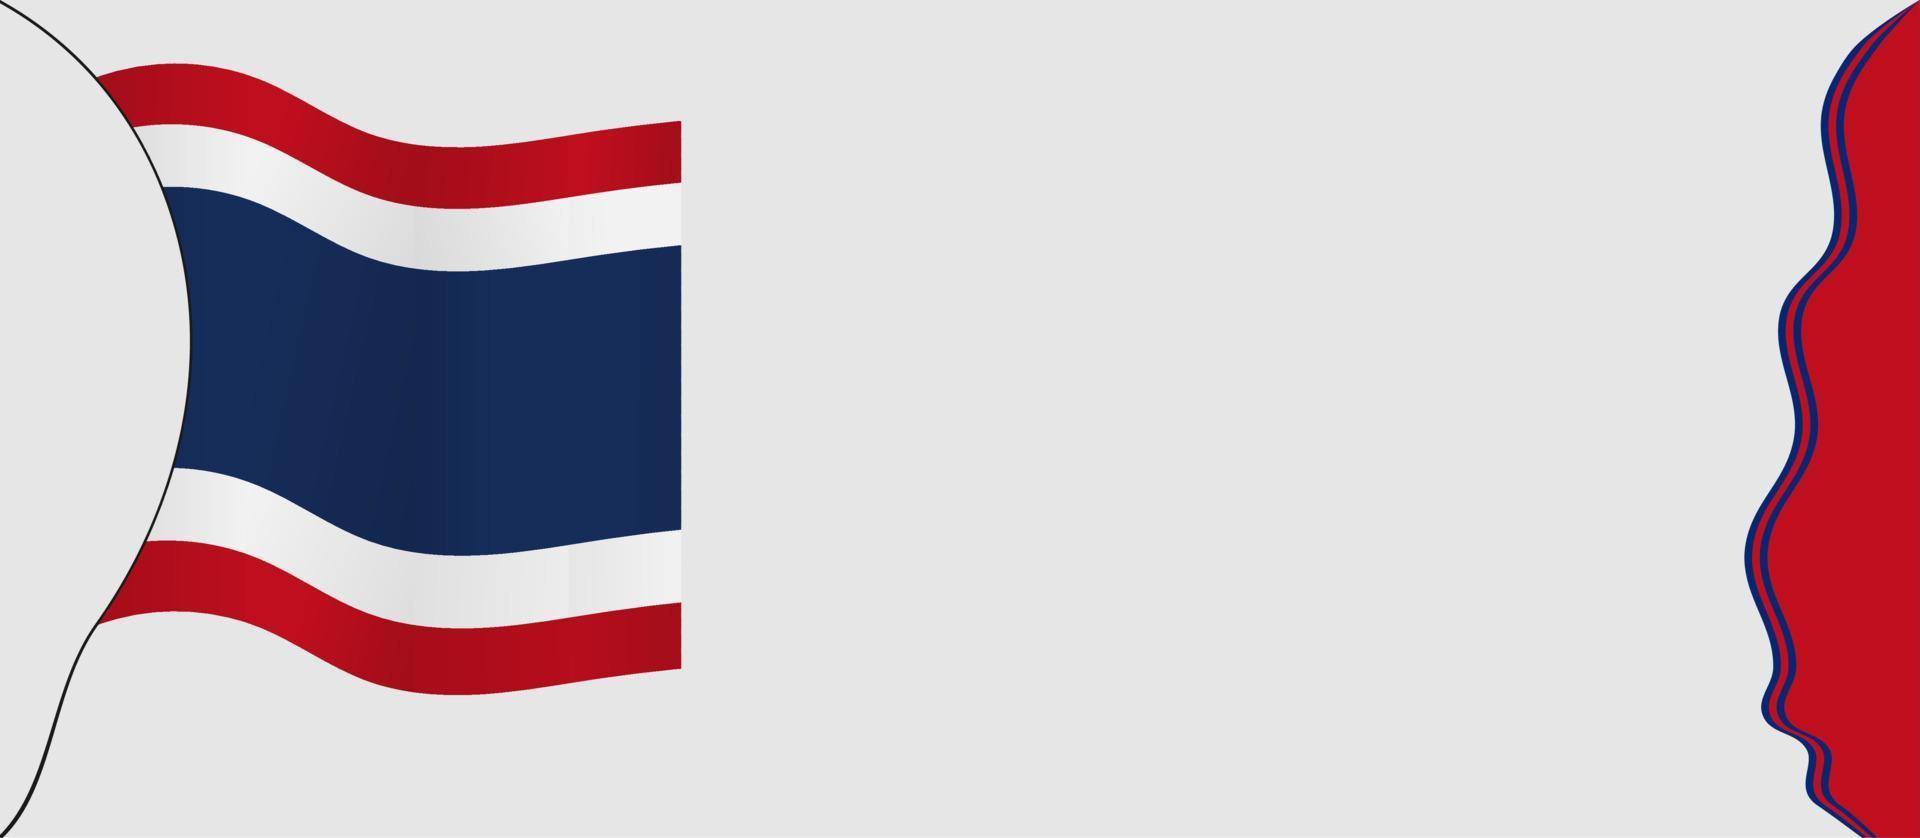 illustration vectorielle de fond de jour de la constitution de la thaïlande et espace de copie. approprié pour être placé sur le contenu avec ce thème. drapeau de la thaïlande vecteur